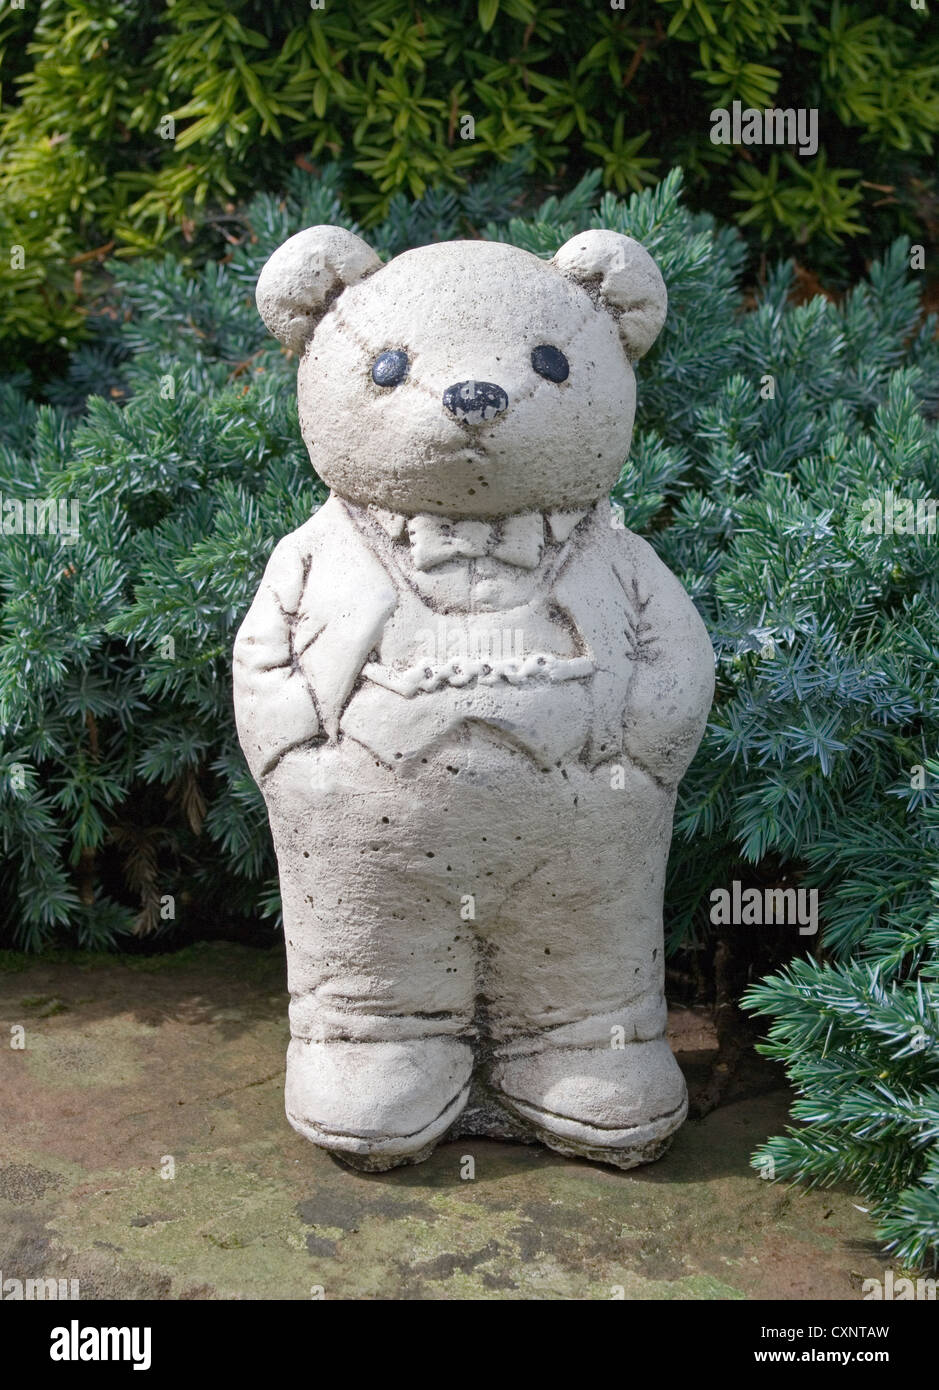 Ornement blanc mignon ours en peluche portant veste et pantalon avec ses mains dans les poches de son pantalon, debout sur le mur du jardin Banque D'Images